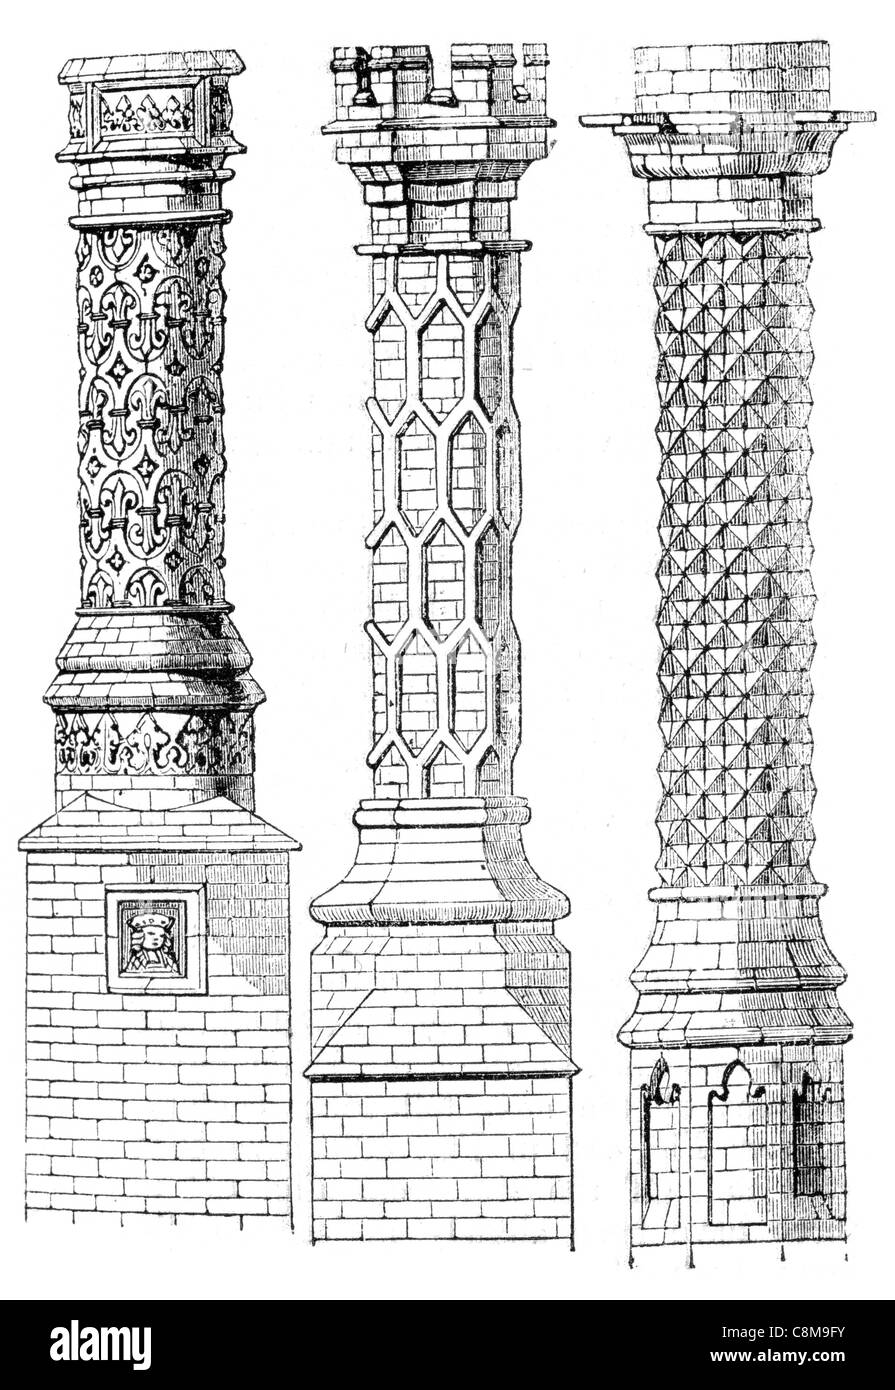 Les cheminées de briques 16ème siècle ornée de fumée de cheminée cheminée cheminée four cuisinière Banque D'Images